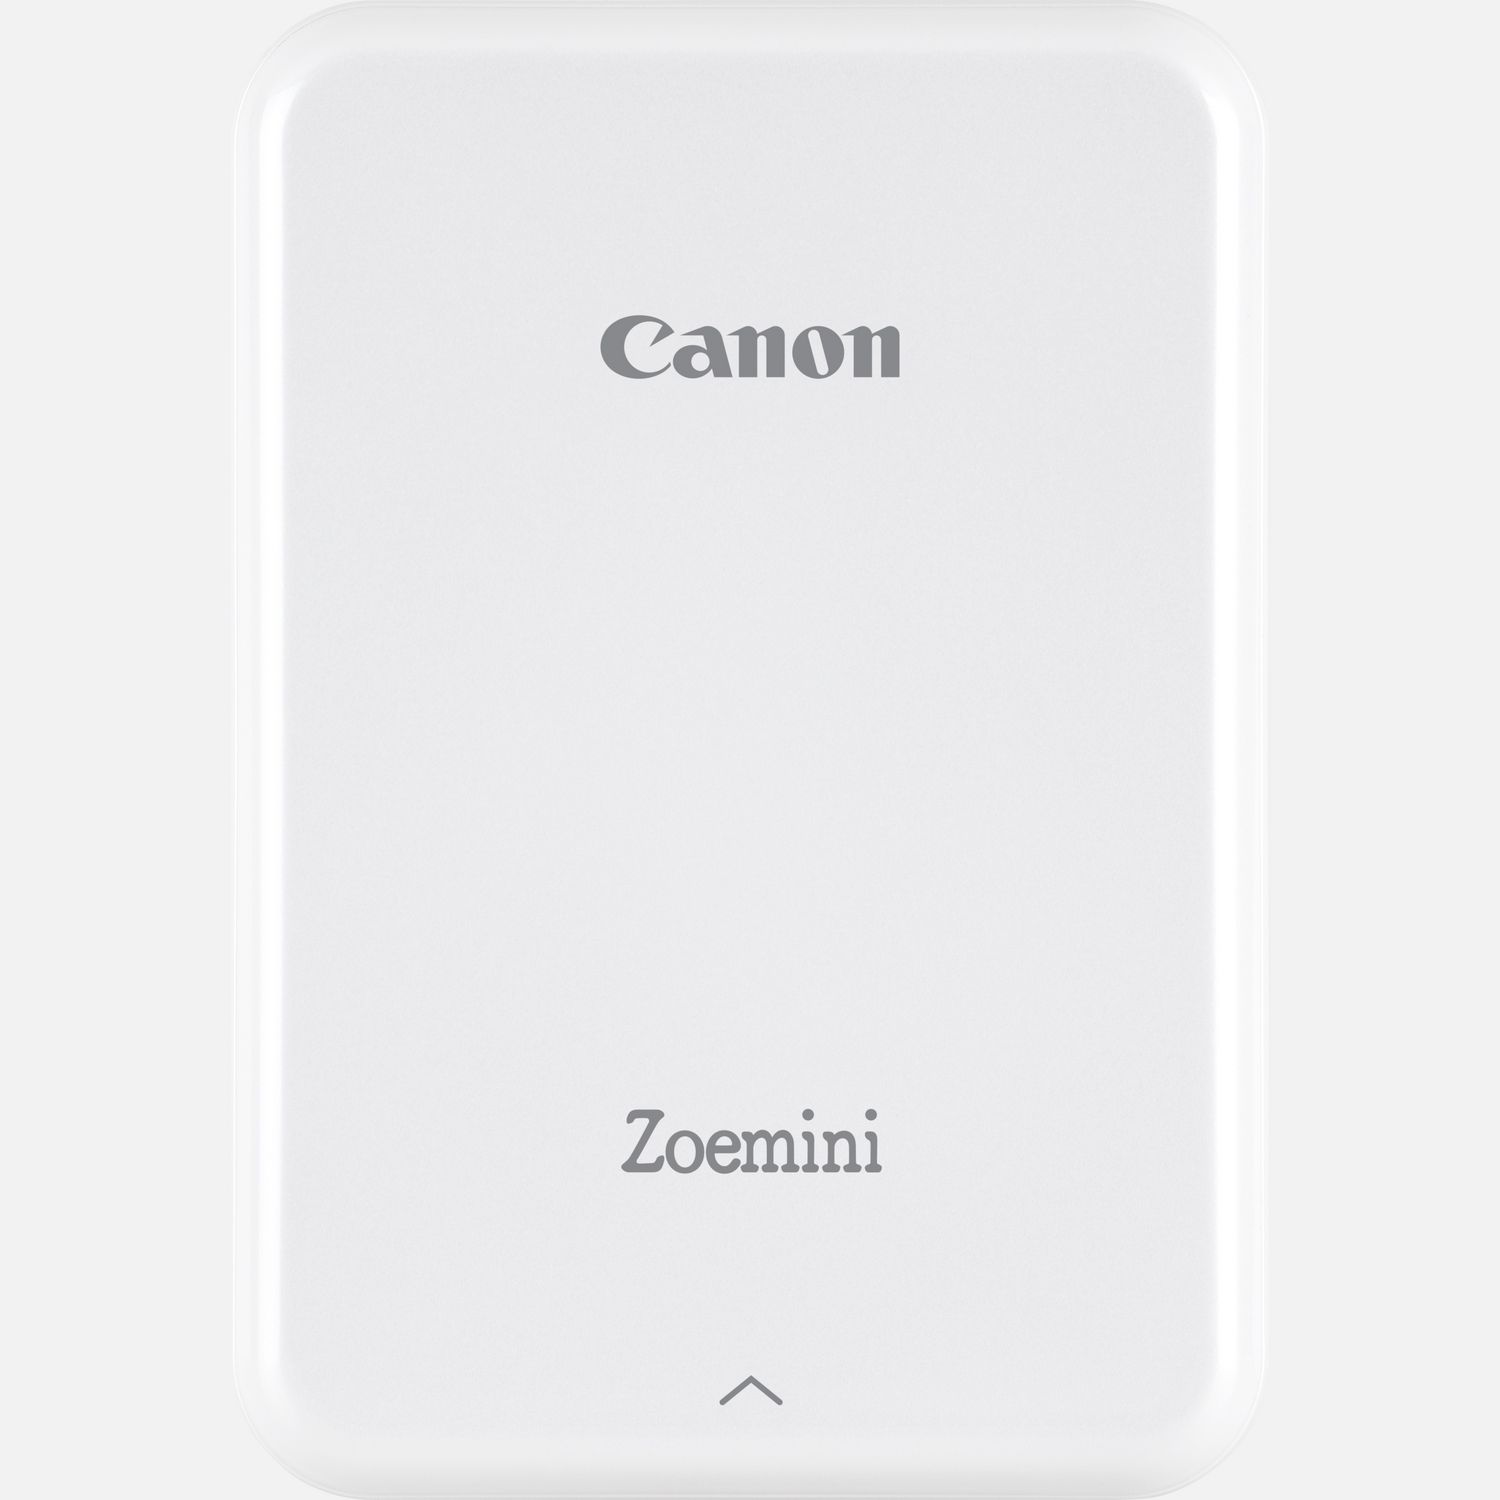 Image of Stampante fotografica portatile Canon Zoemini, bianca